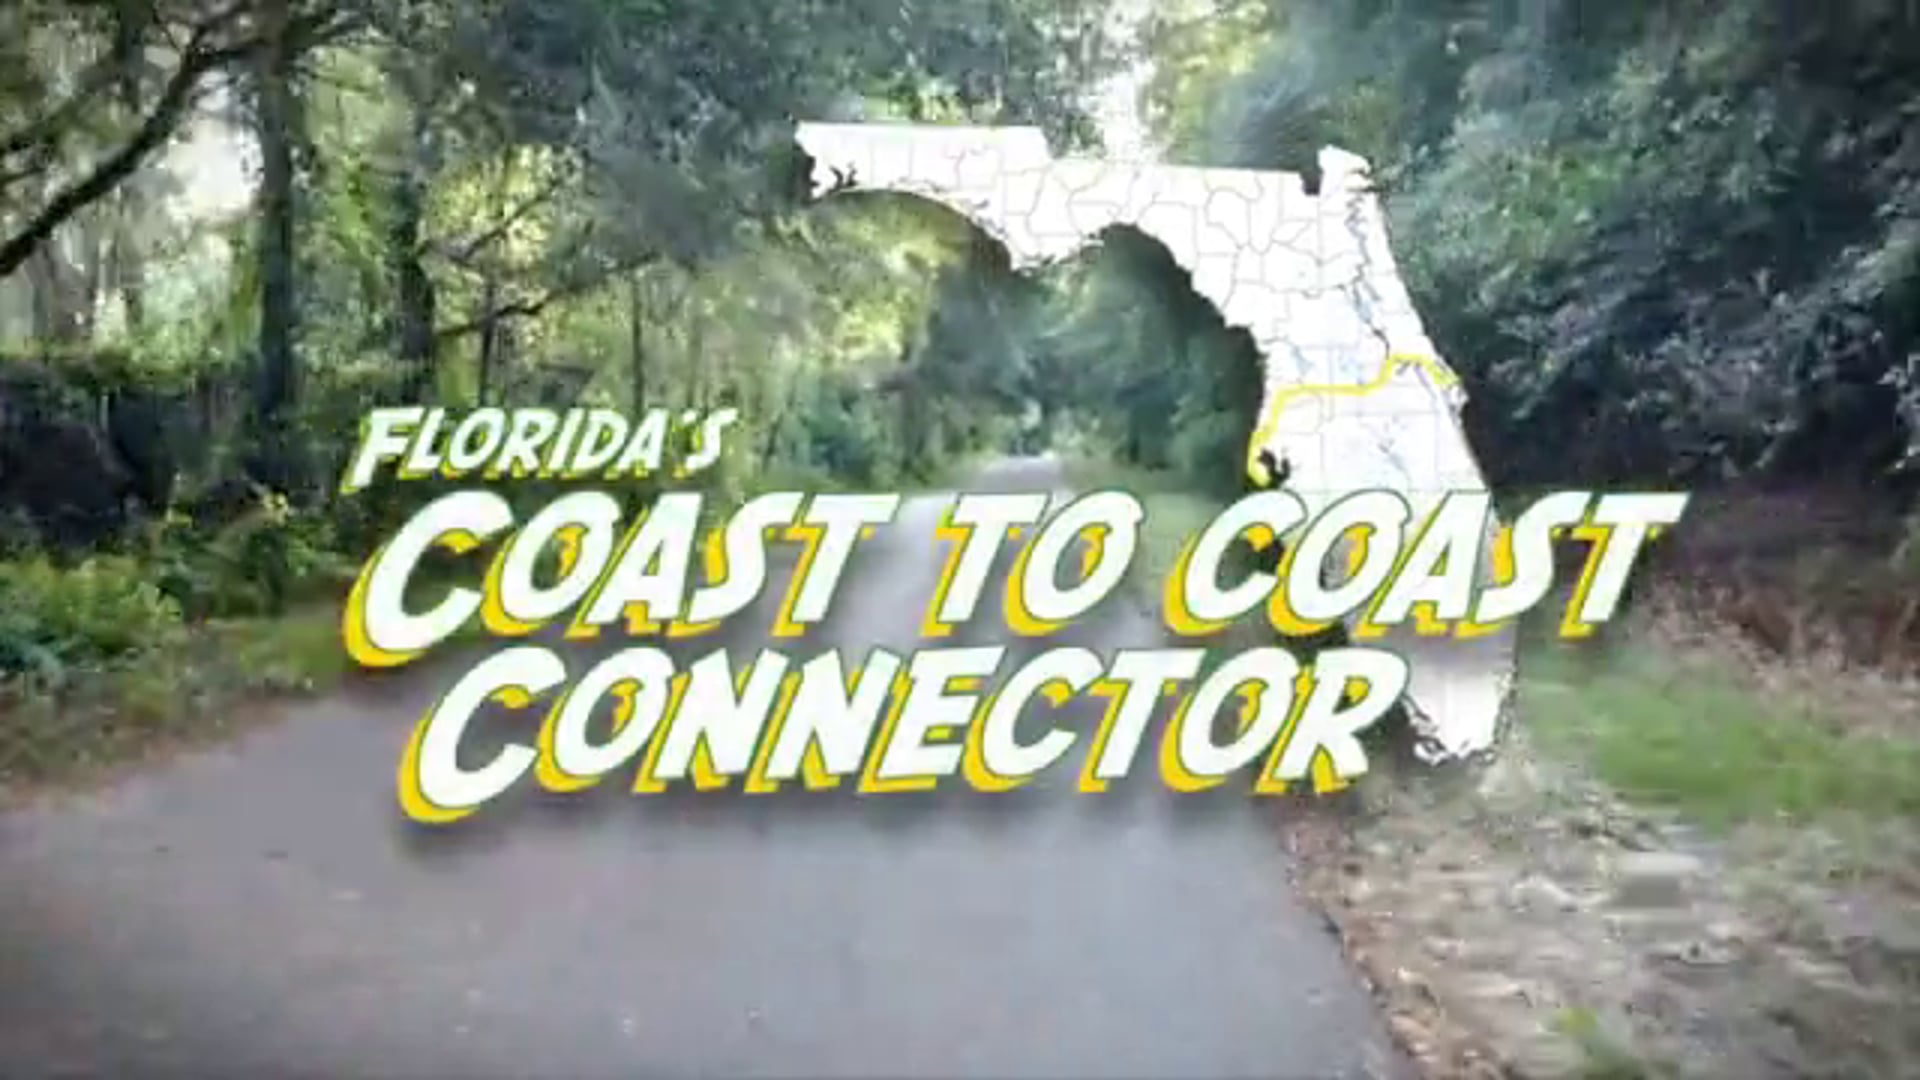 Florida's Coast to Coast Connector trail